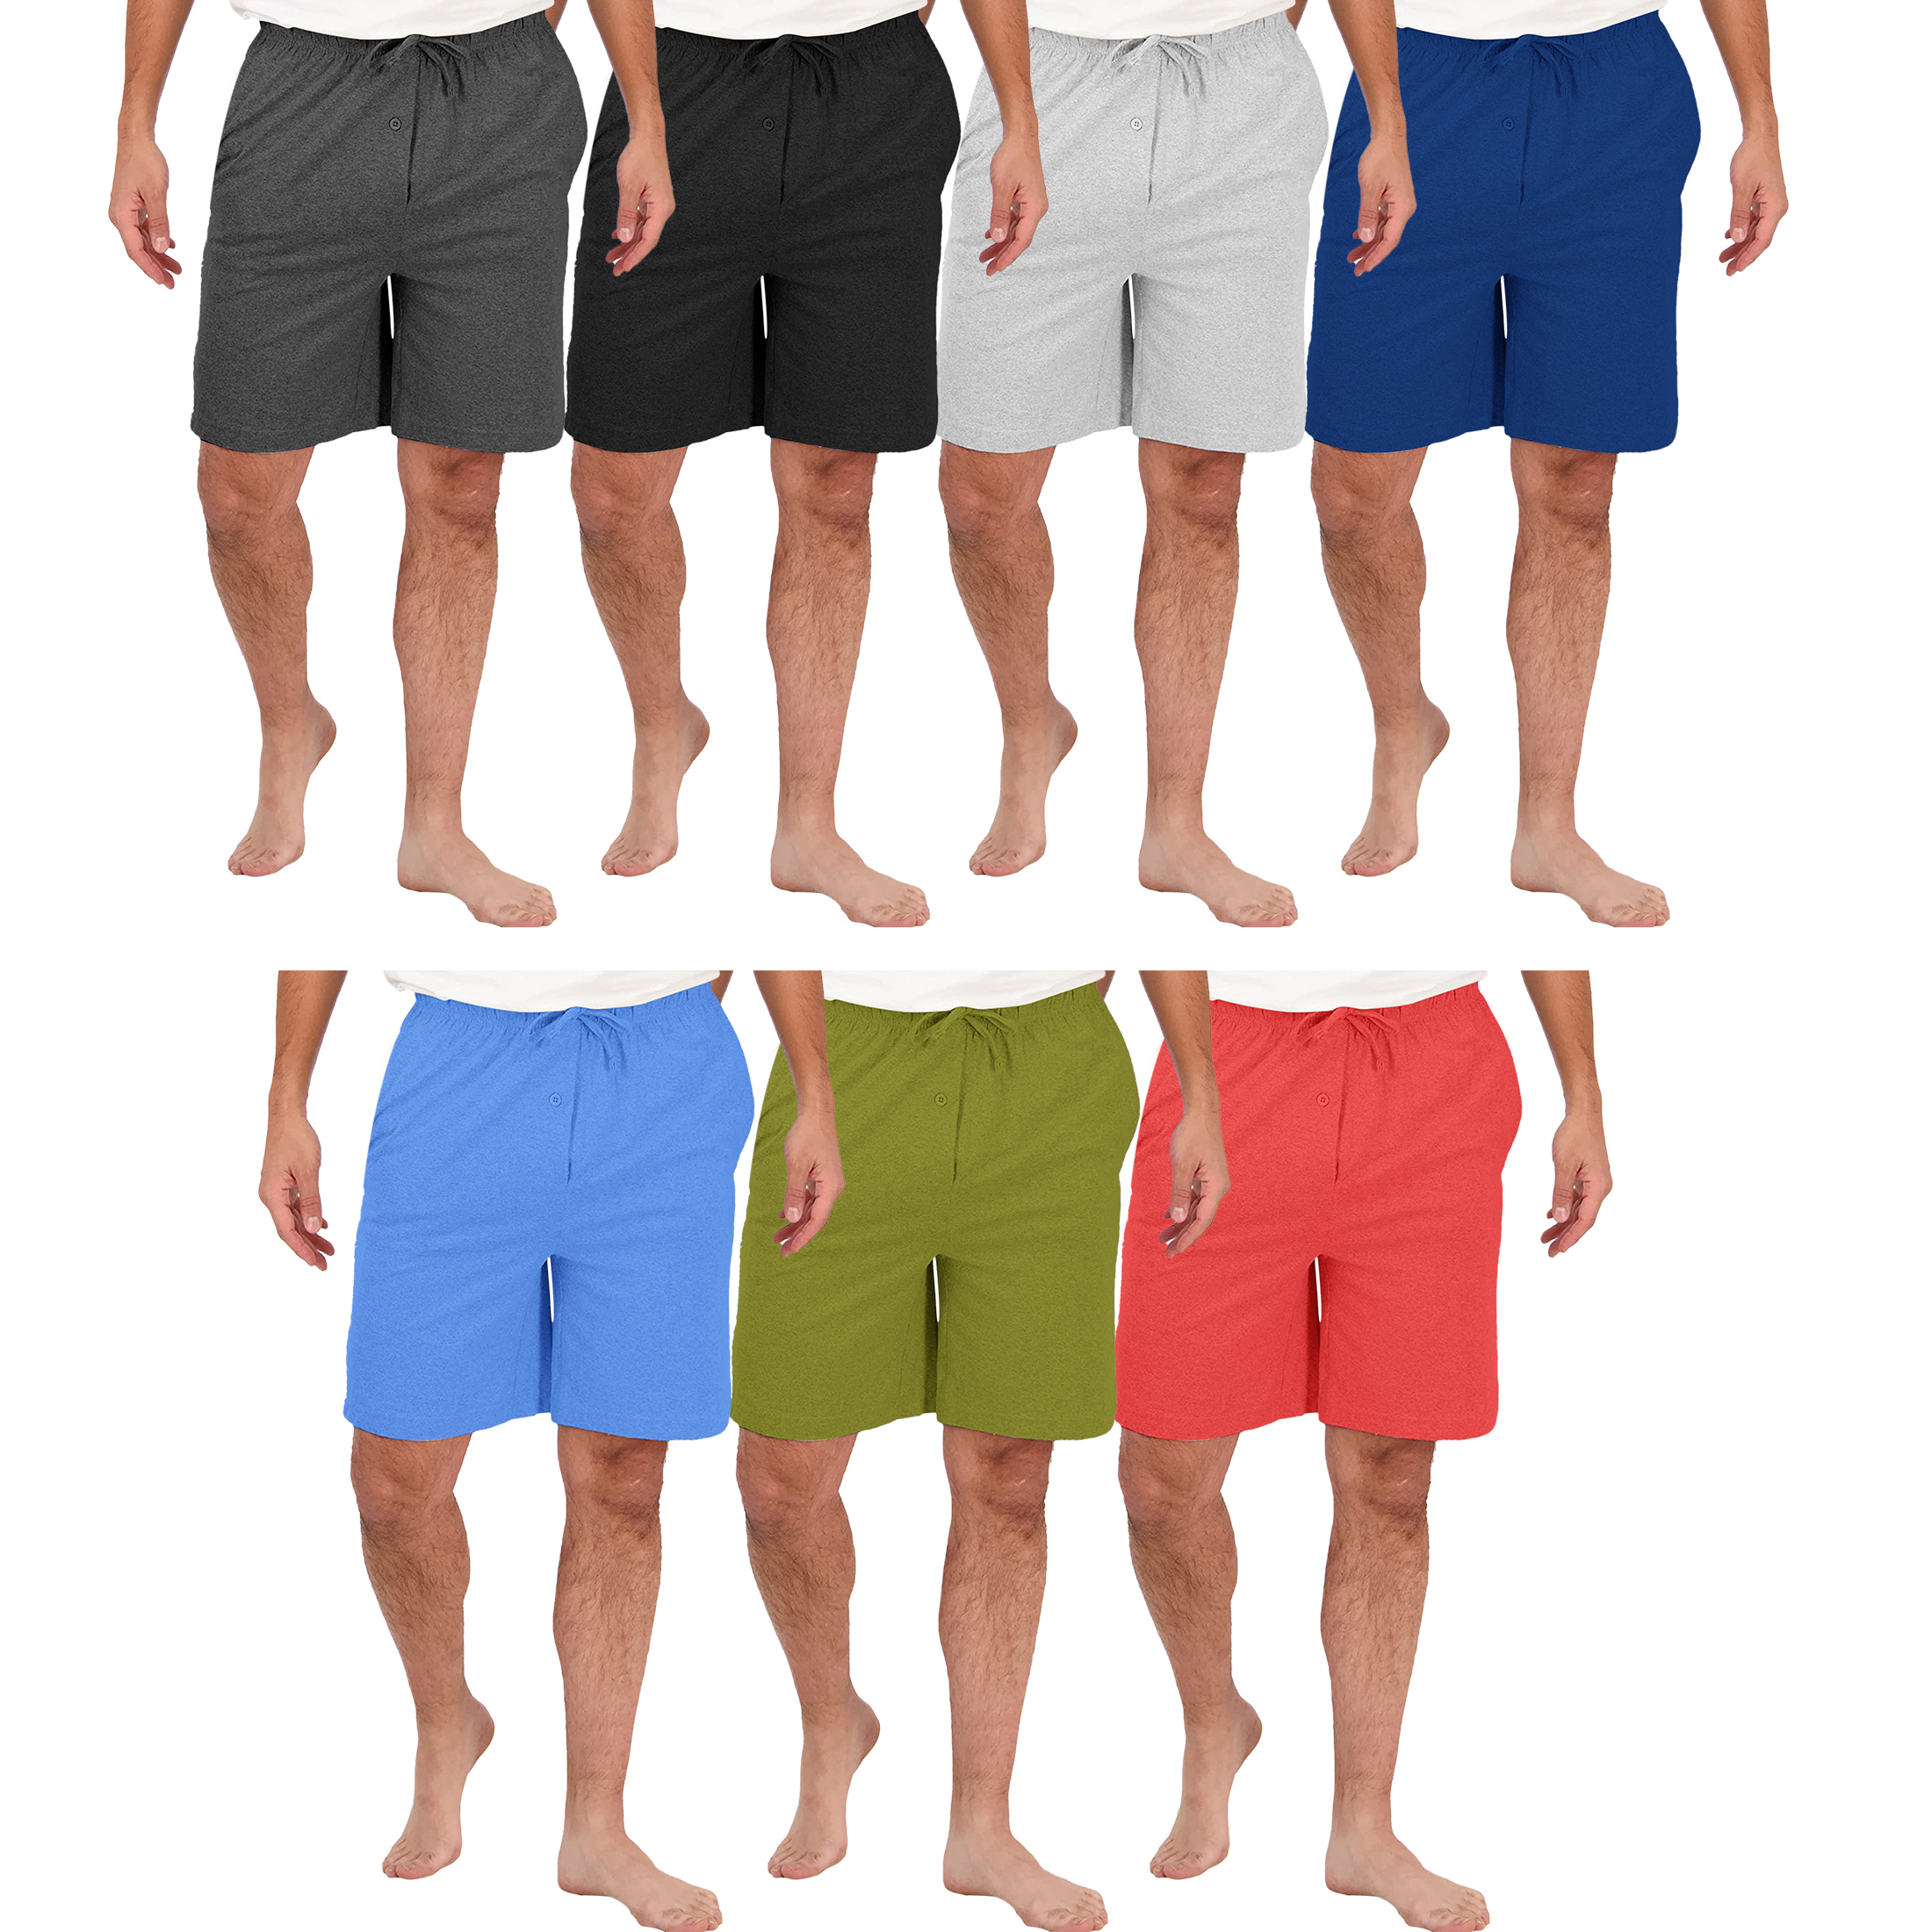 2-Pack: Men's Soft Solid Elastic Waistband Sleep Lounge Pajama Shorts - X-Large